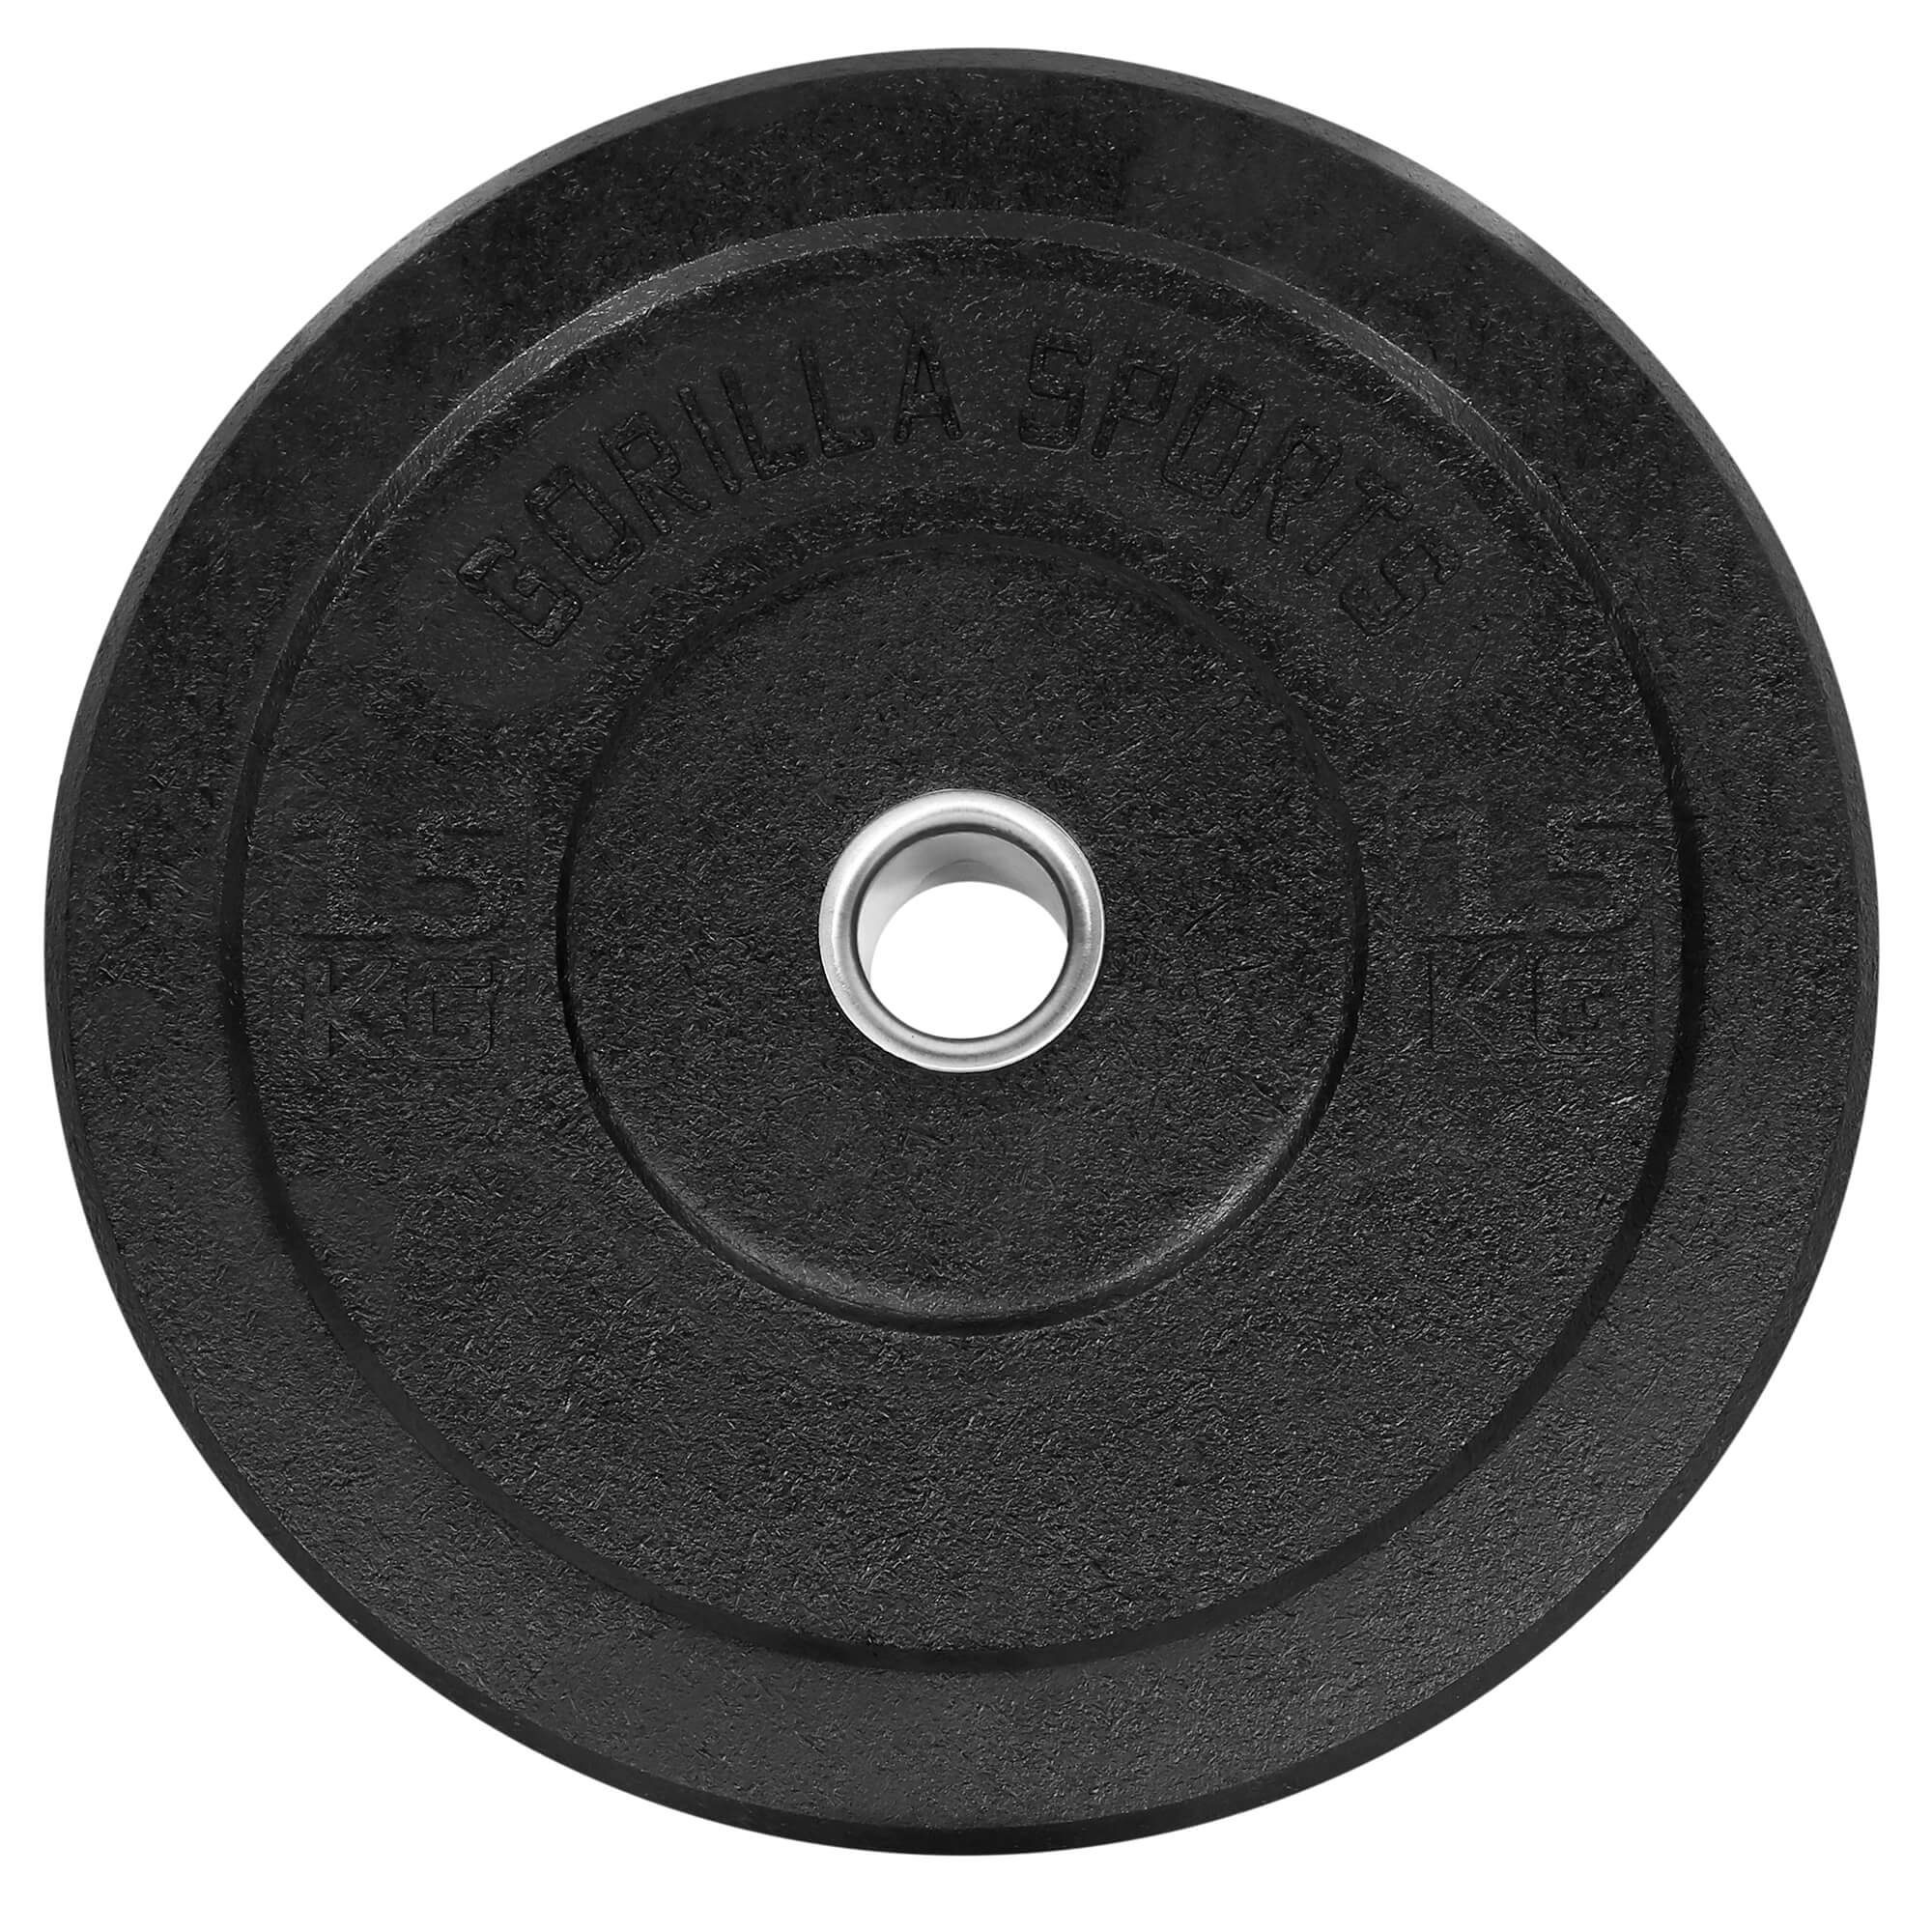 GORILLA SPORTS Hantelscheiben Olympia,5-50kg Gewichte,Einzeln/Set,Bumper Plates,Gewichtsscheiben 15kg